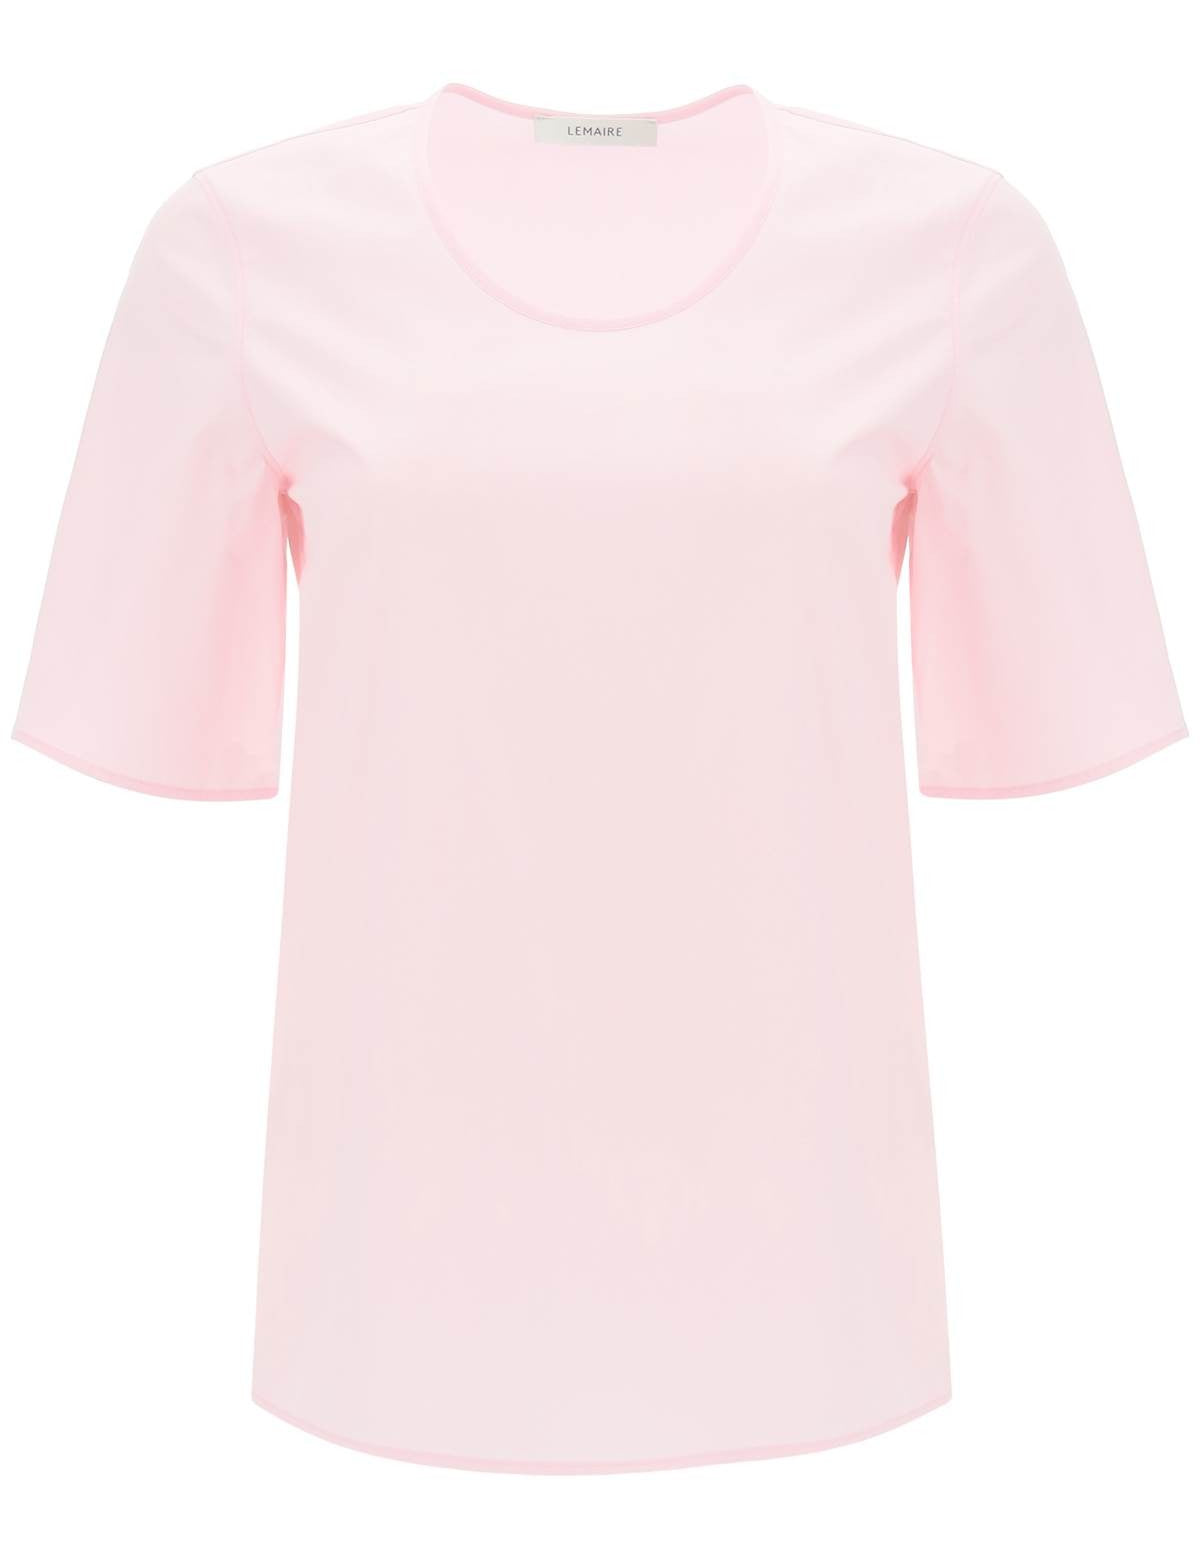 lemaire-cotton-t-shirt_913c39aa-d0d2-410e-b5a5-664fc4fdef39.jpg